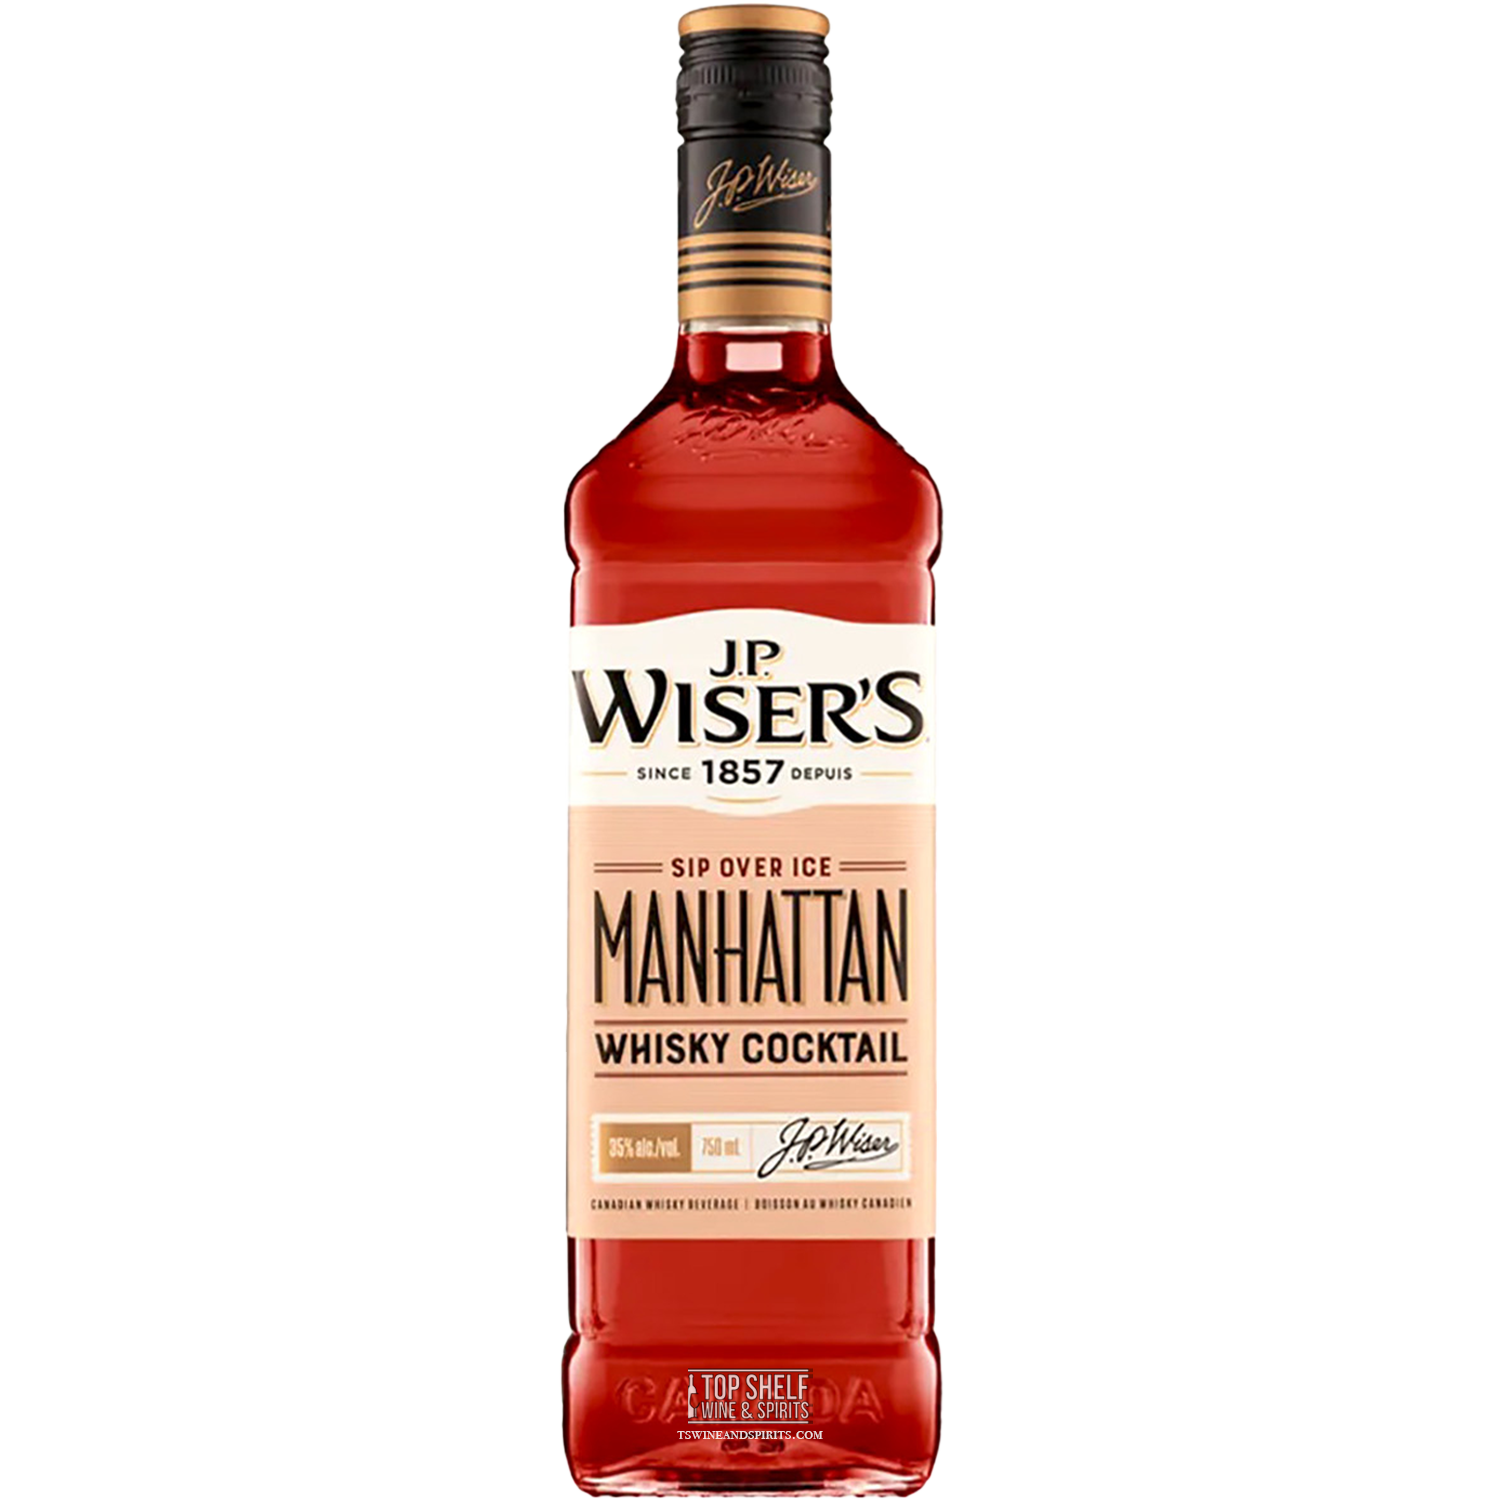 JP Wiser's Manhattan Cocktail